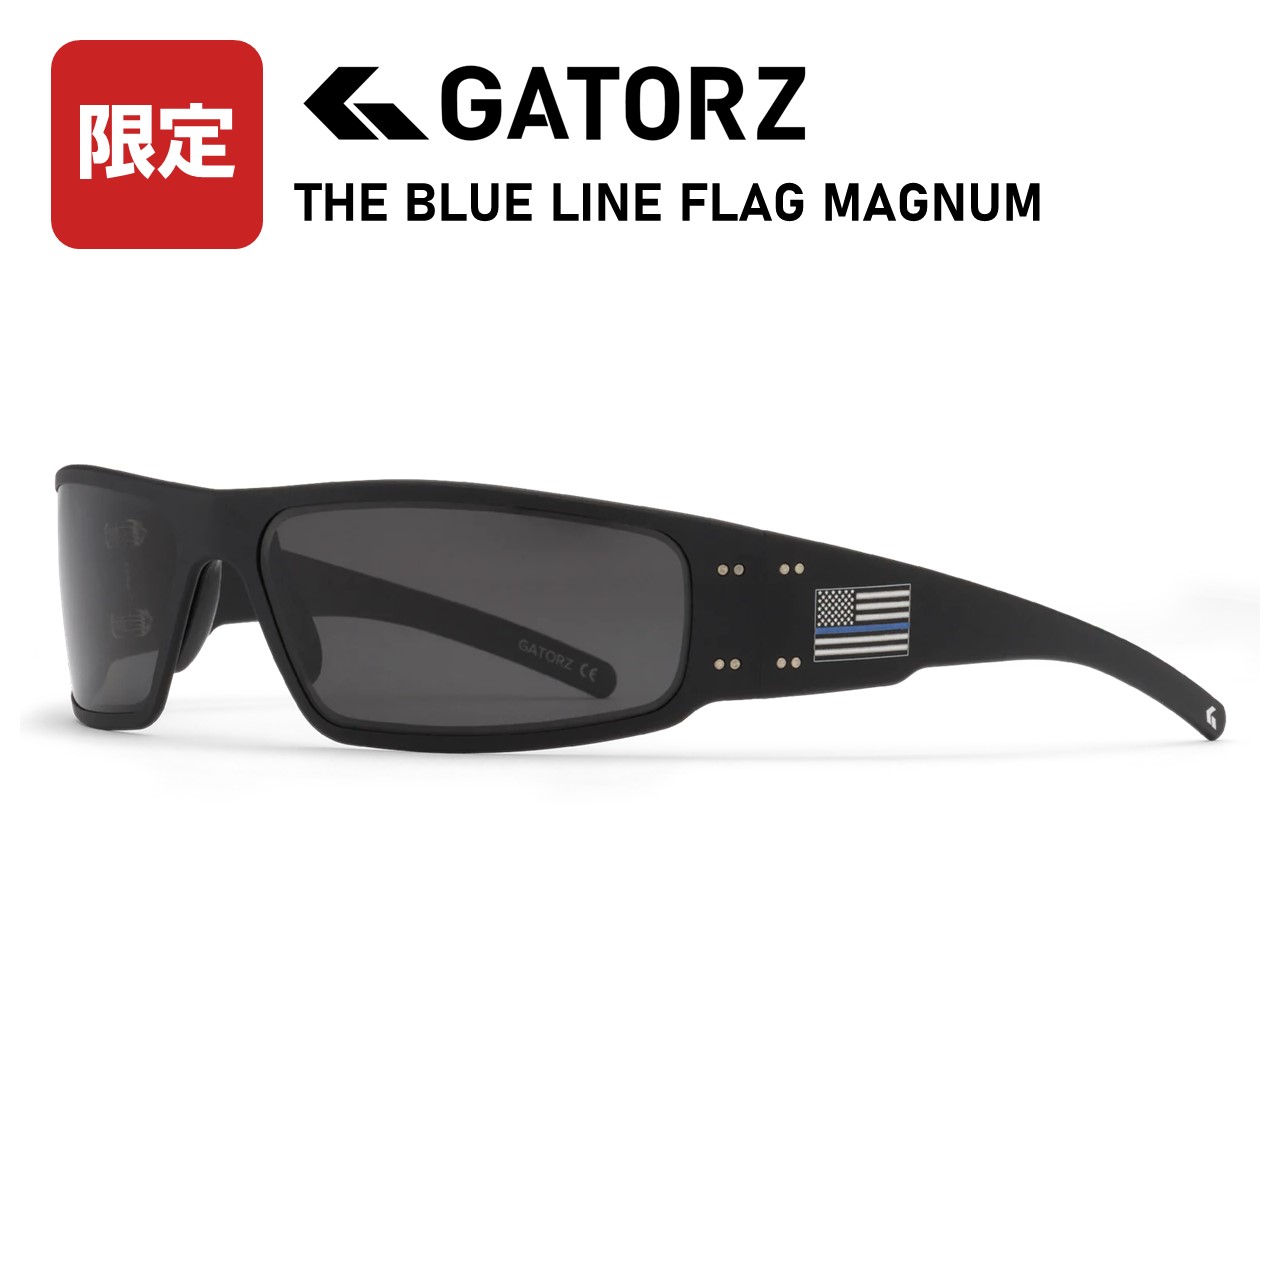 【限定モデル】GATORZ THIN BLUELINE FLAG MAGUNAM GZ-01-445 ロングノーズピース標準 数量限定 ゲイターズ マグナム ブルーライン ブラック/スモーク偏光レンズ ミリタリー サバイバルゲーム スポーツ メンズ レディース